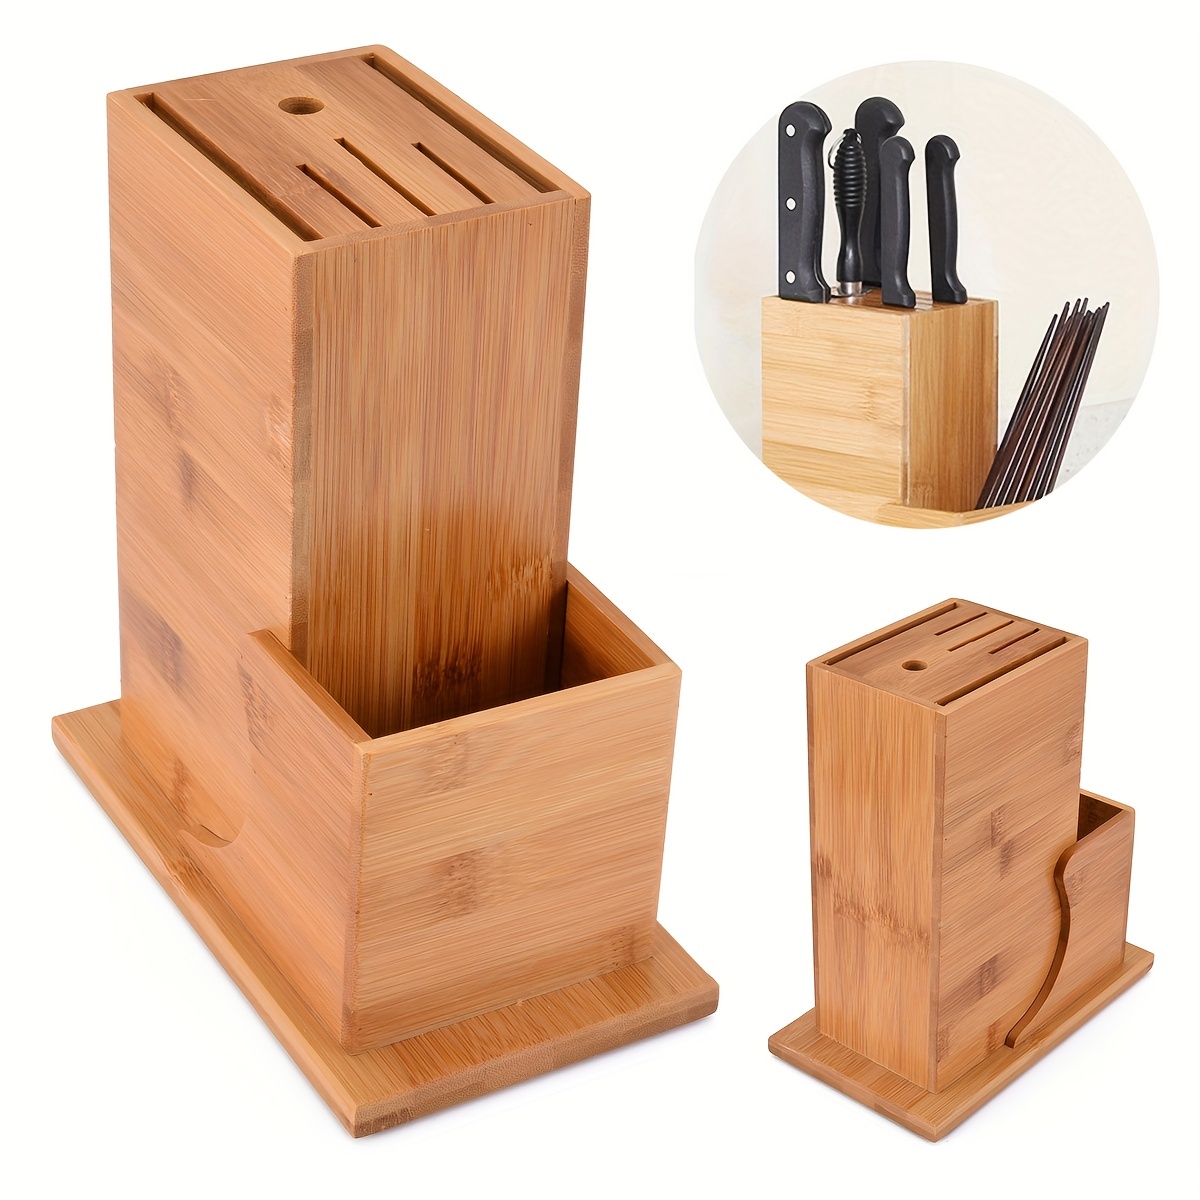  Soporte de madera para cuchillos de bambú, soporte para  cuchillos de cocina, estante de almacenamiento de cuchillos de cocina,  estante de almacenamiento multifunción para el hogar (color madera) : Hogar  y